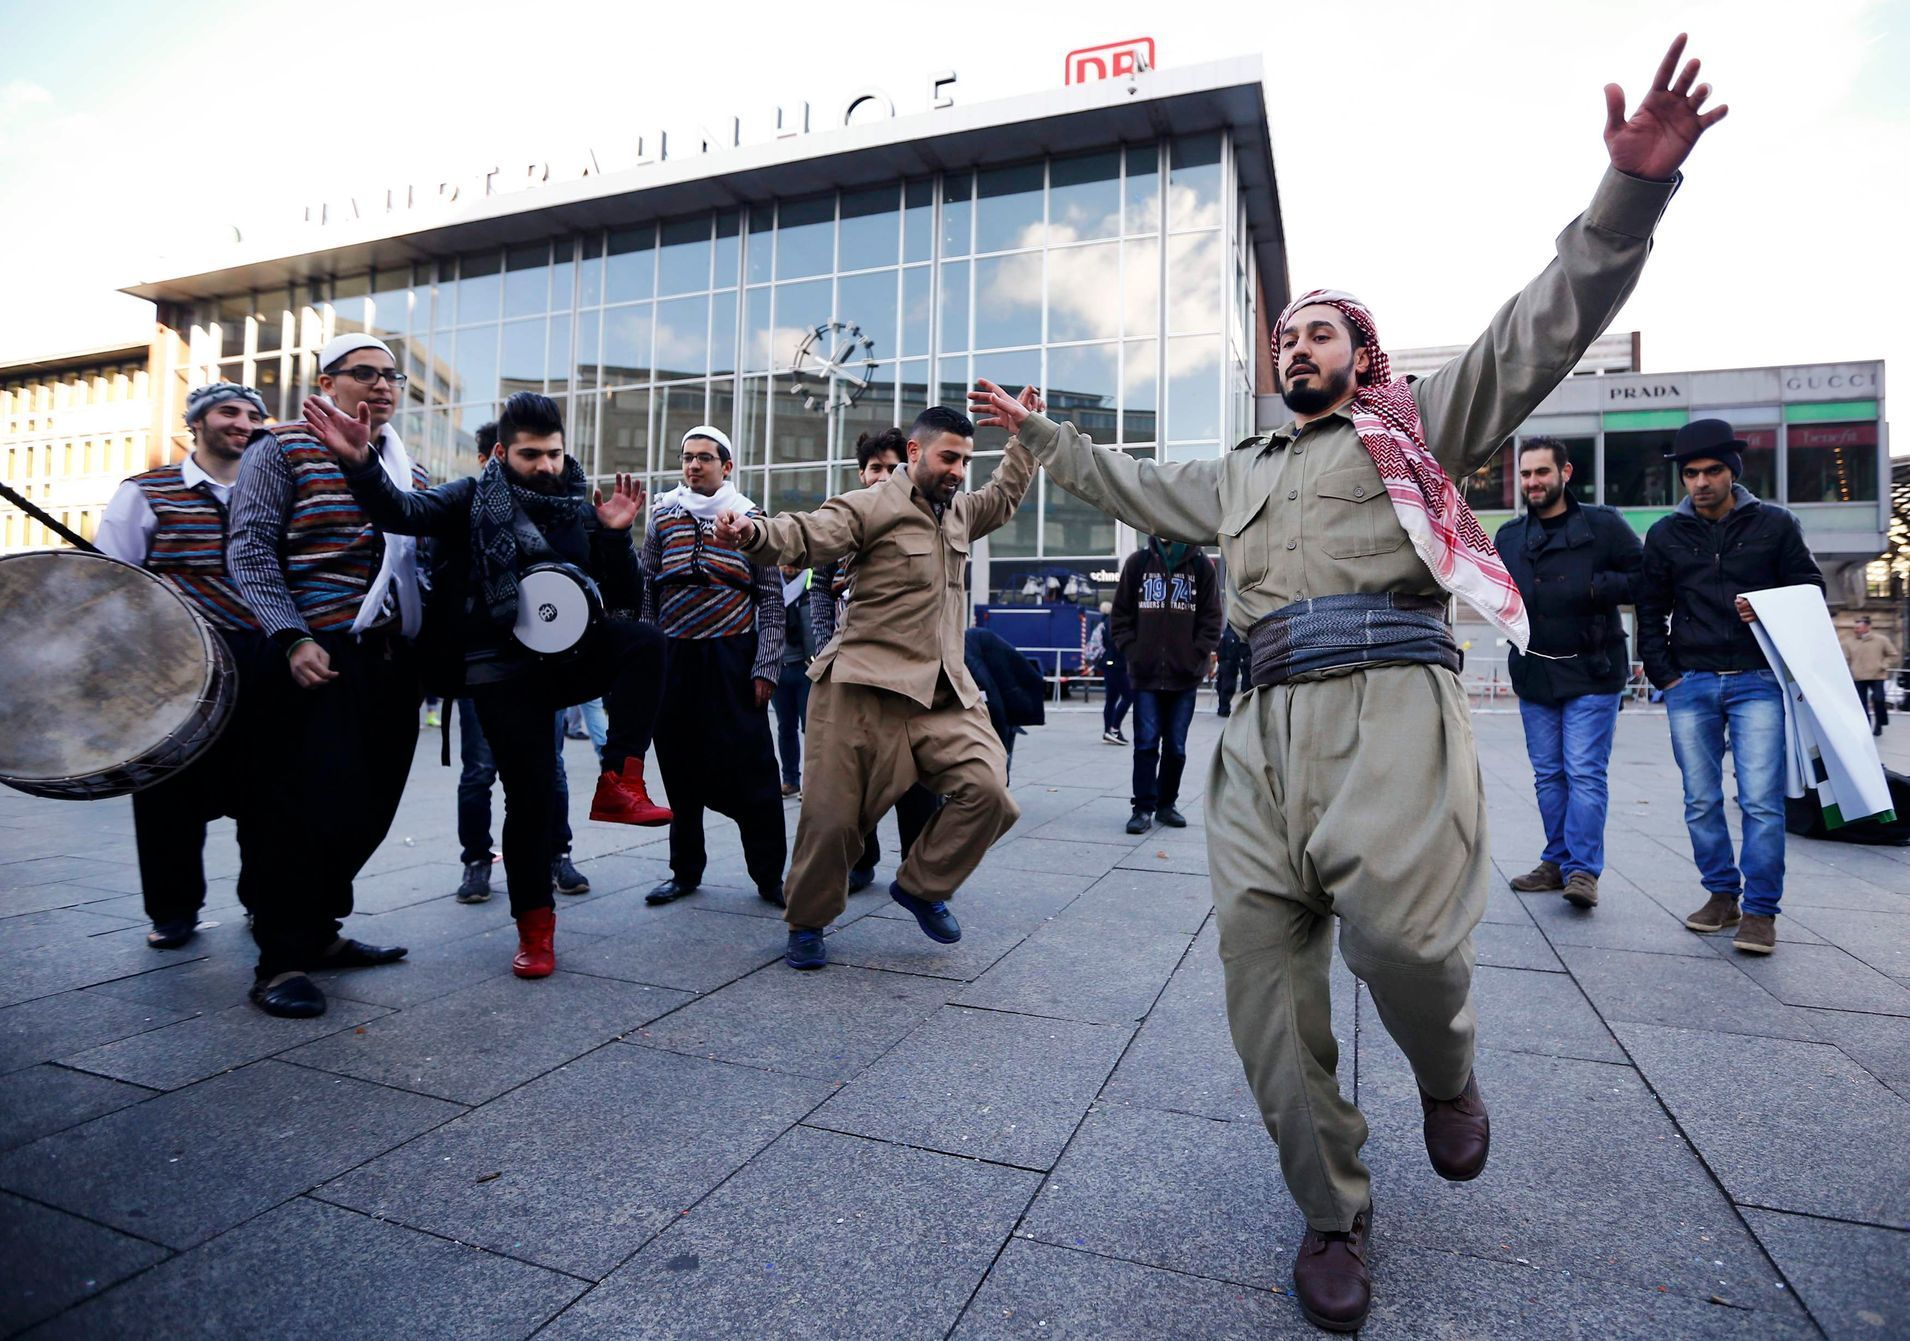 Uprchlíci tančí během karnevalu před budovou hlavního nádraží v Kolíně nad Rýnem.